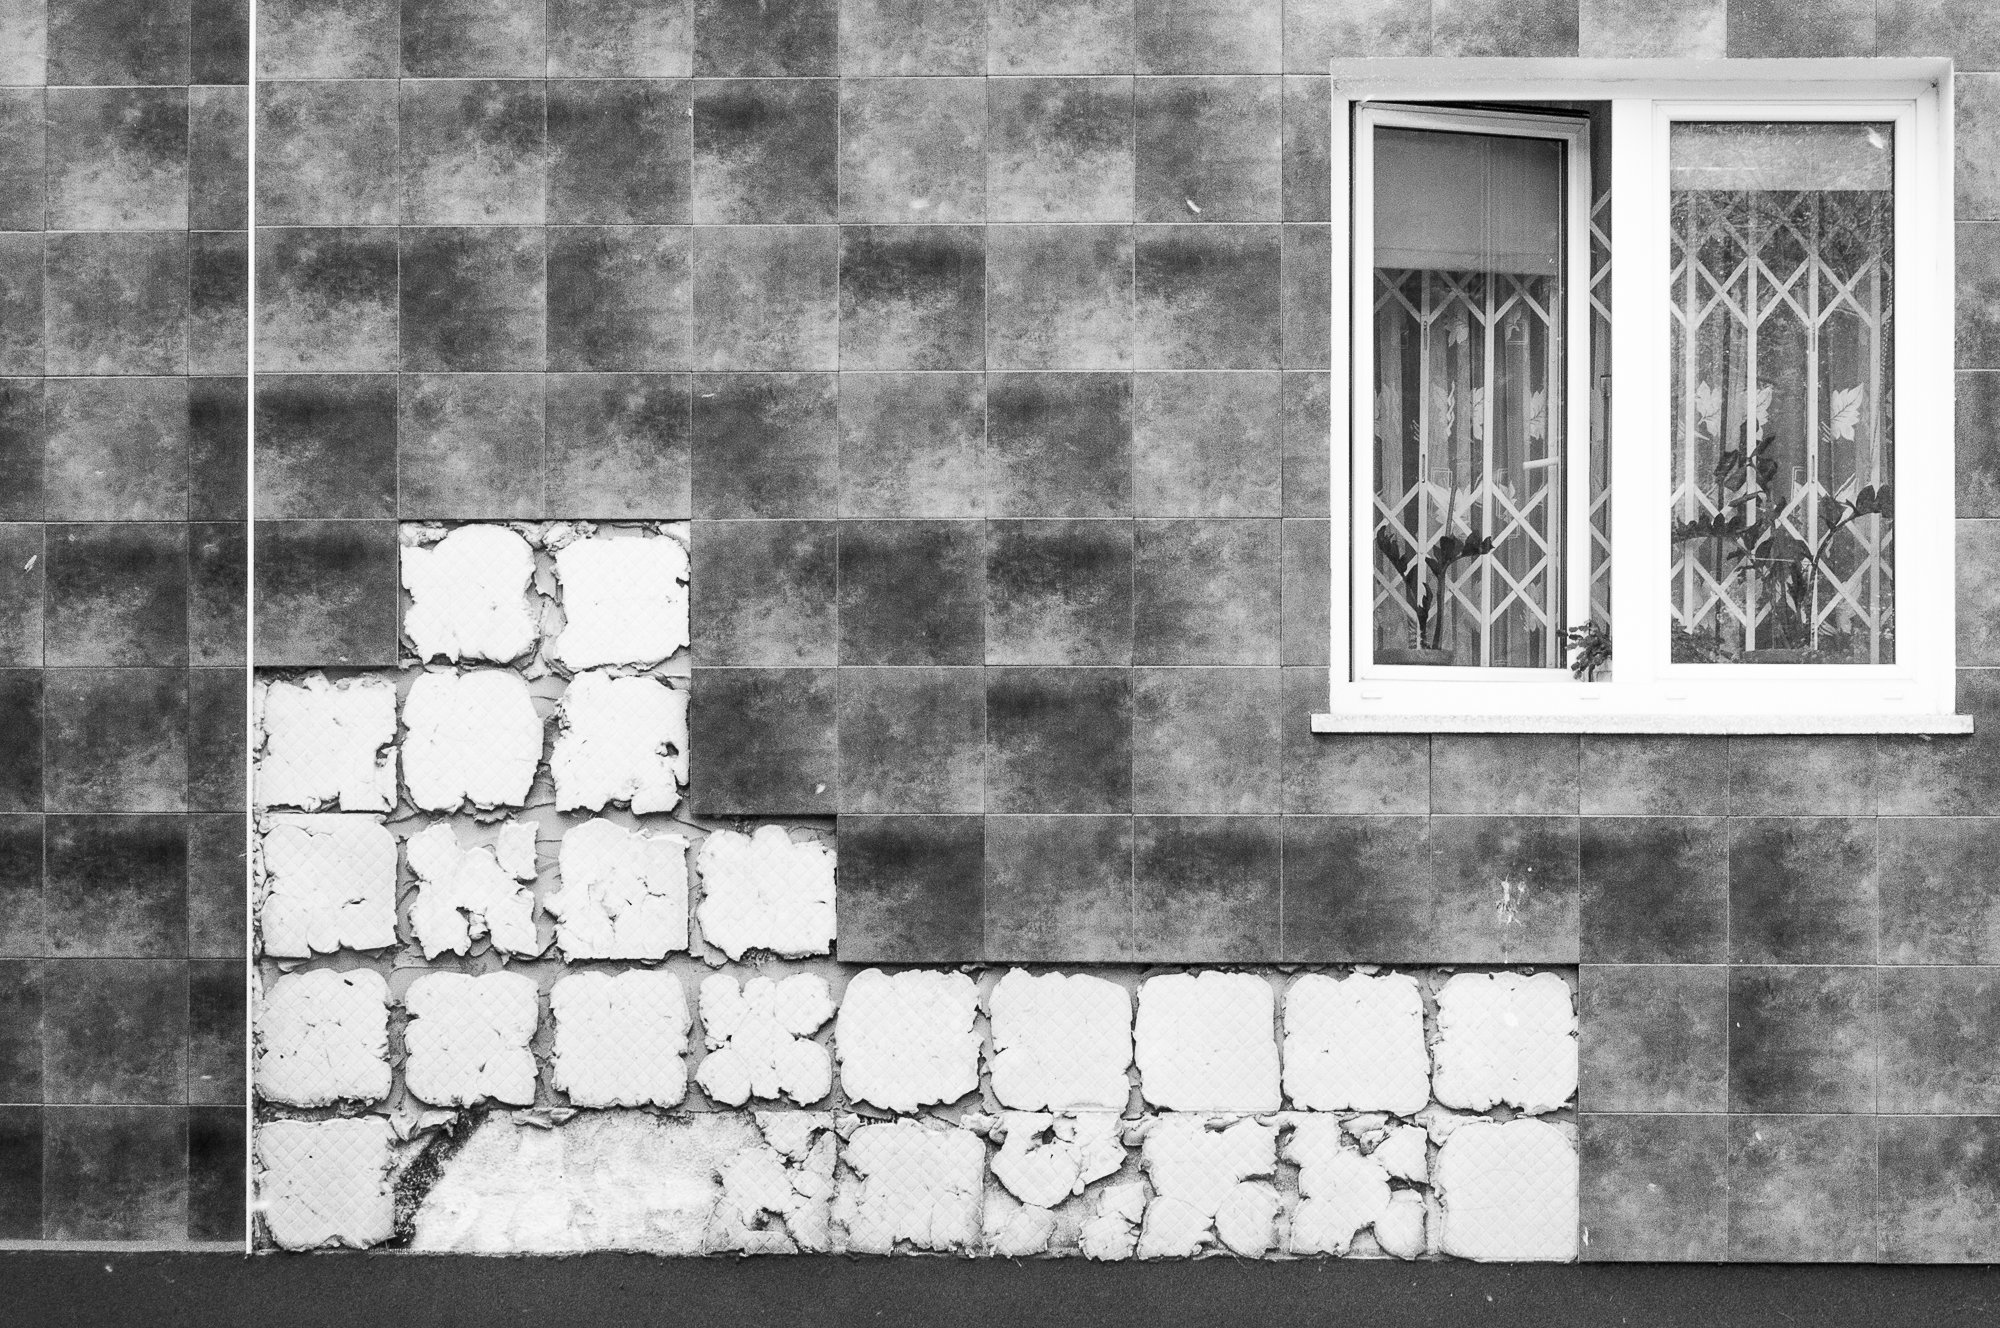 Adam Mazek Photography Warsaw (Warszawa) 2019. Post: "One year on Instagram." Minimalism. Tetris. Window.